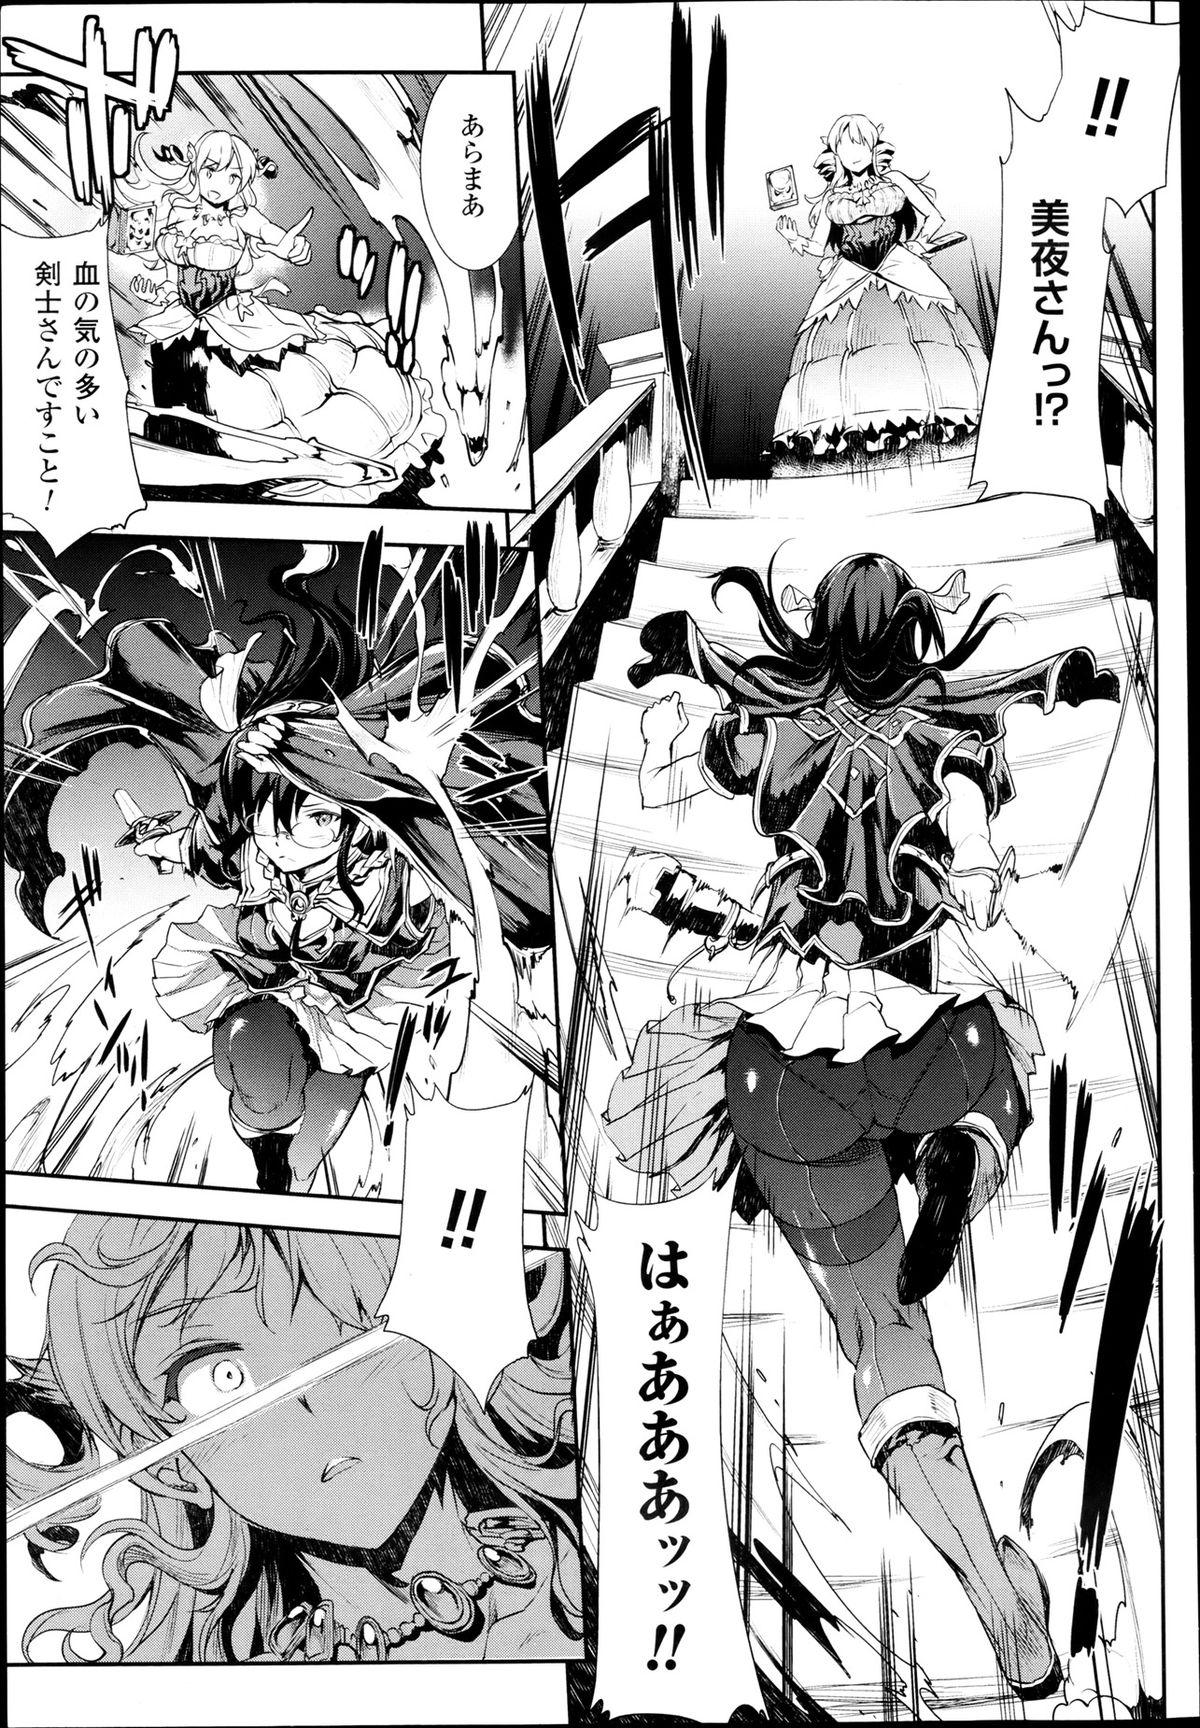 Jizz [Erect Sawaru] Shinkyoku no Grimoire -PANDRA saga 2nd story- Ch 07-9.5 Punheta - Page 7